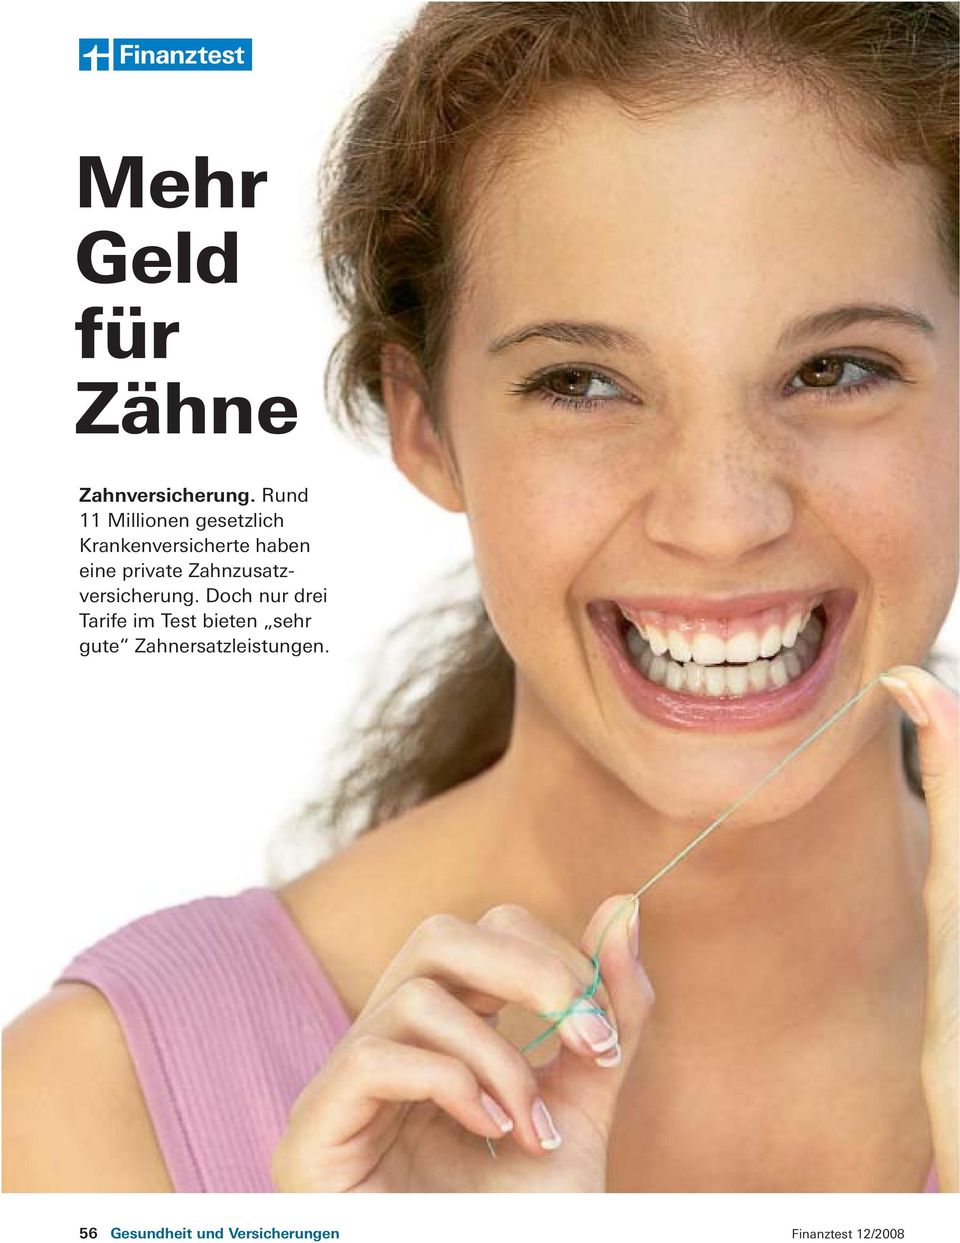 private Zahnzusatz - versicherung.